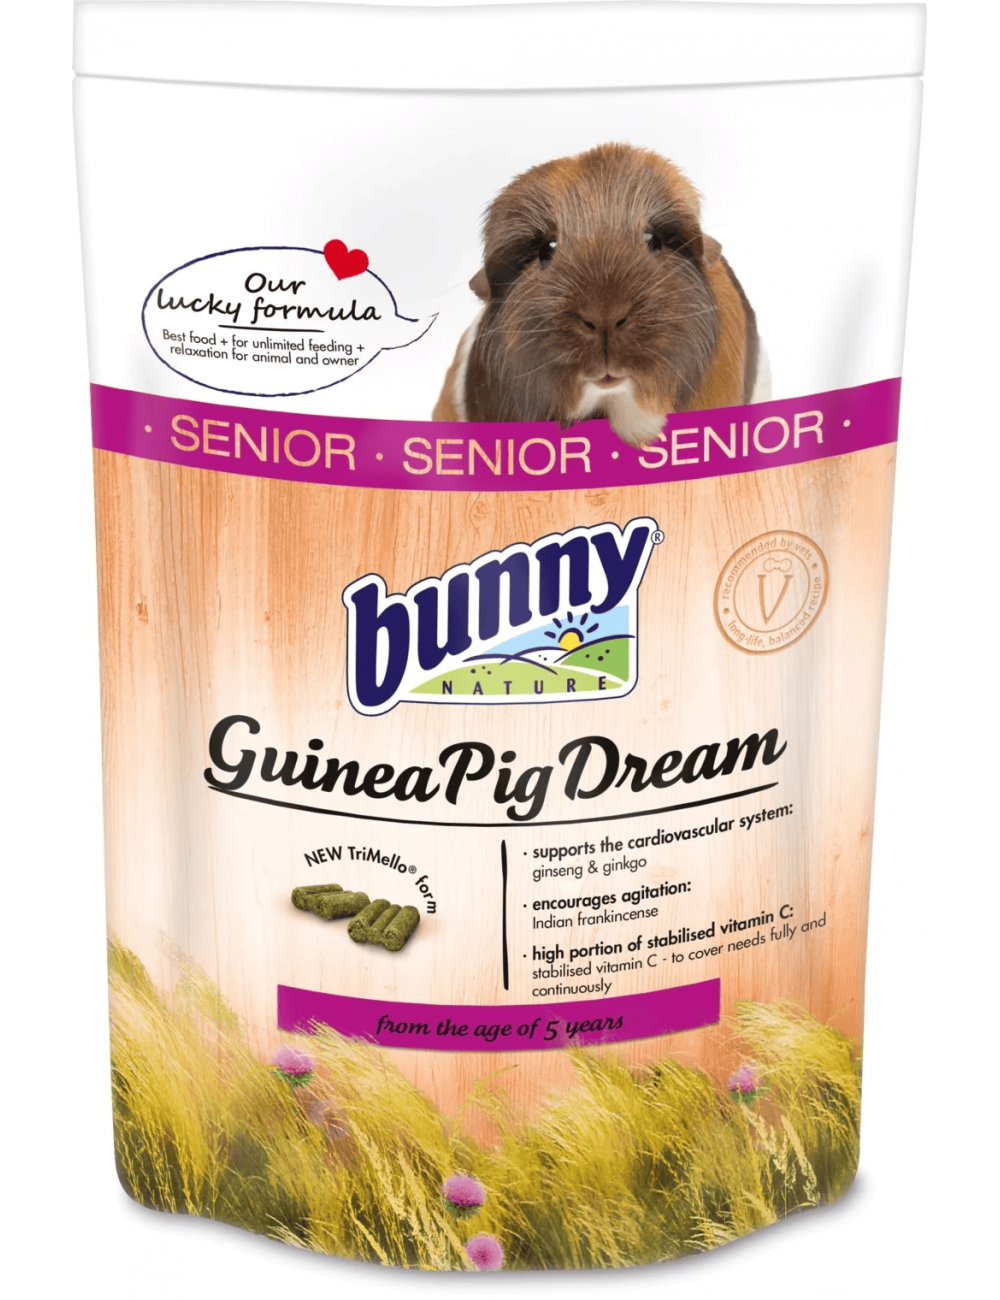 BUNNY NATURE - GuineaPig Dream SENIOR Guinea Pig